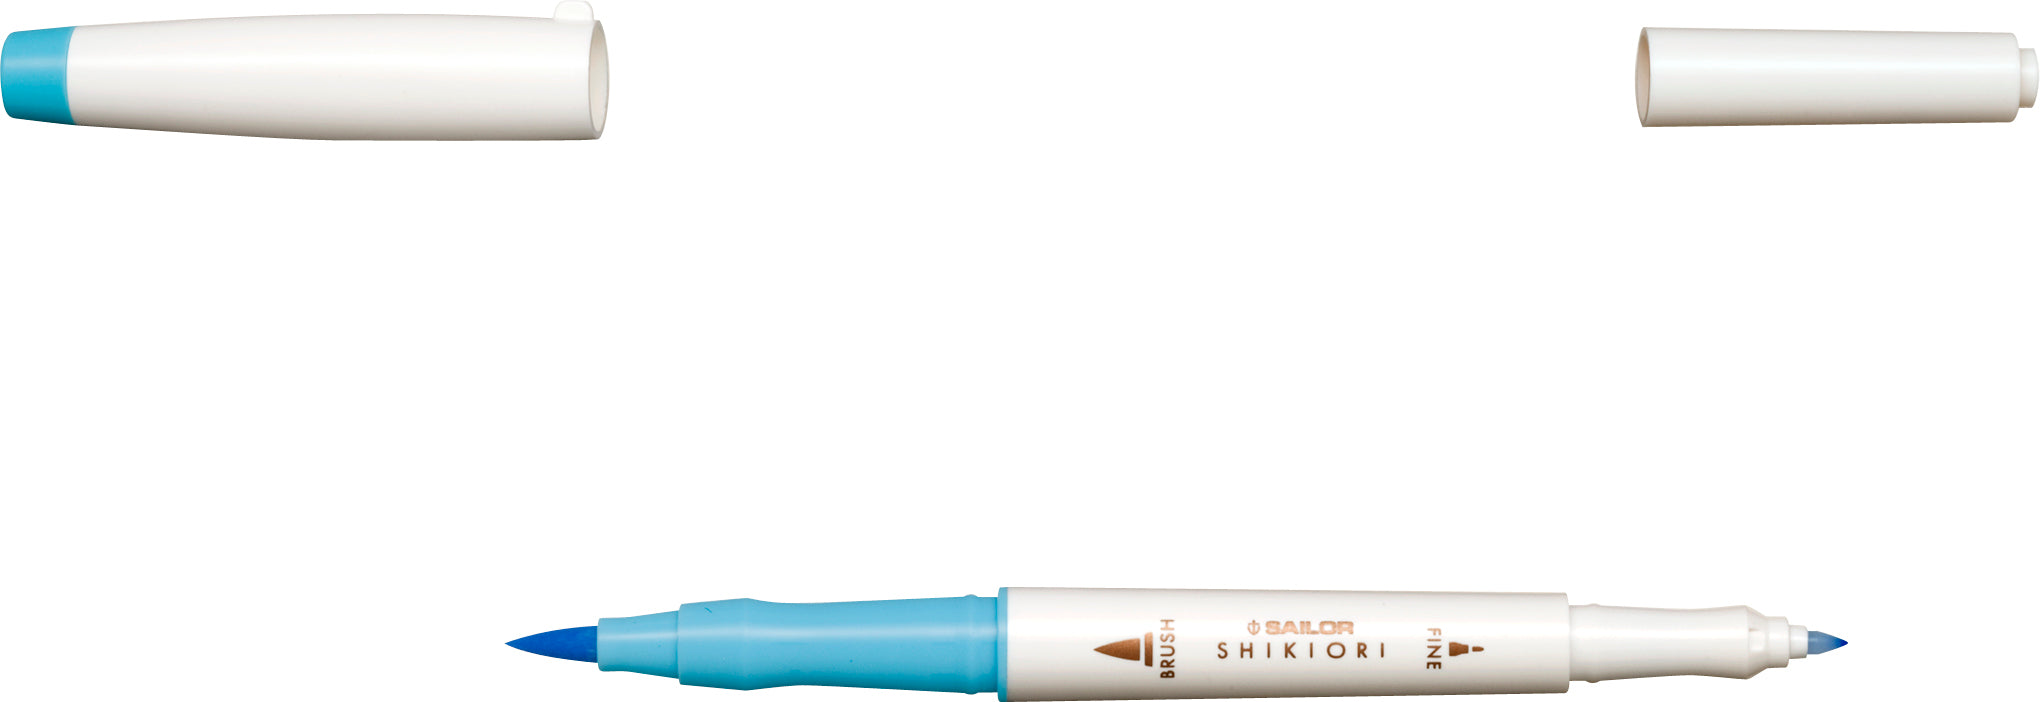 SAILOR Twin Head Brush Pen Shikiori